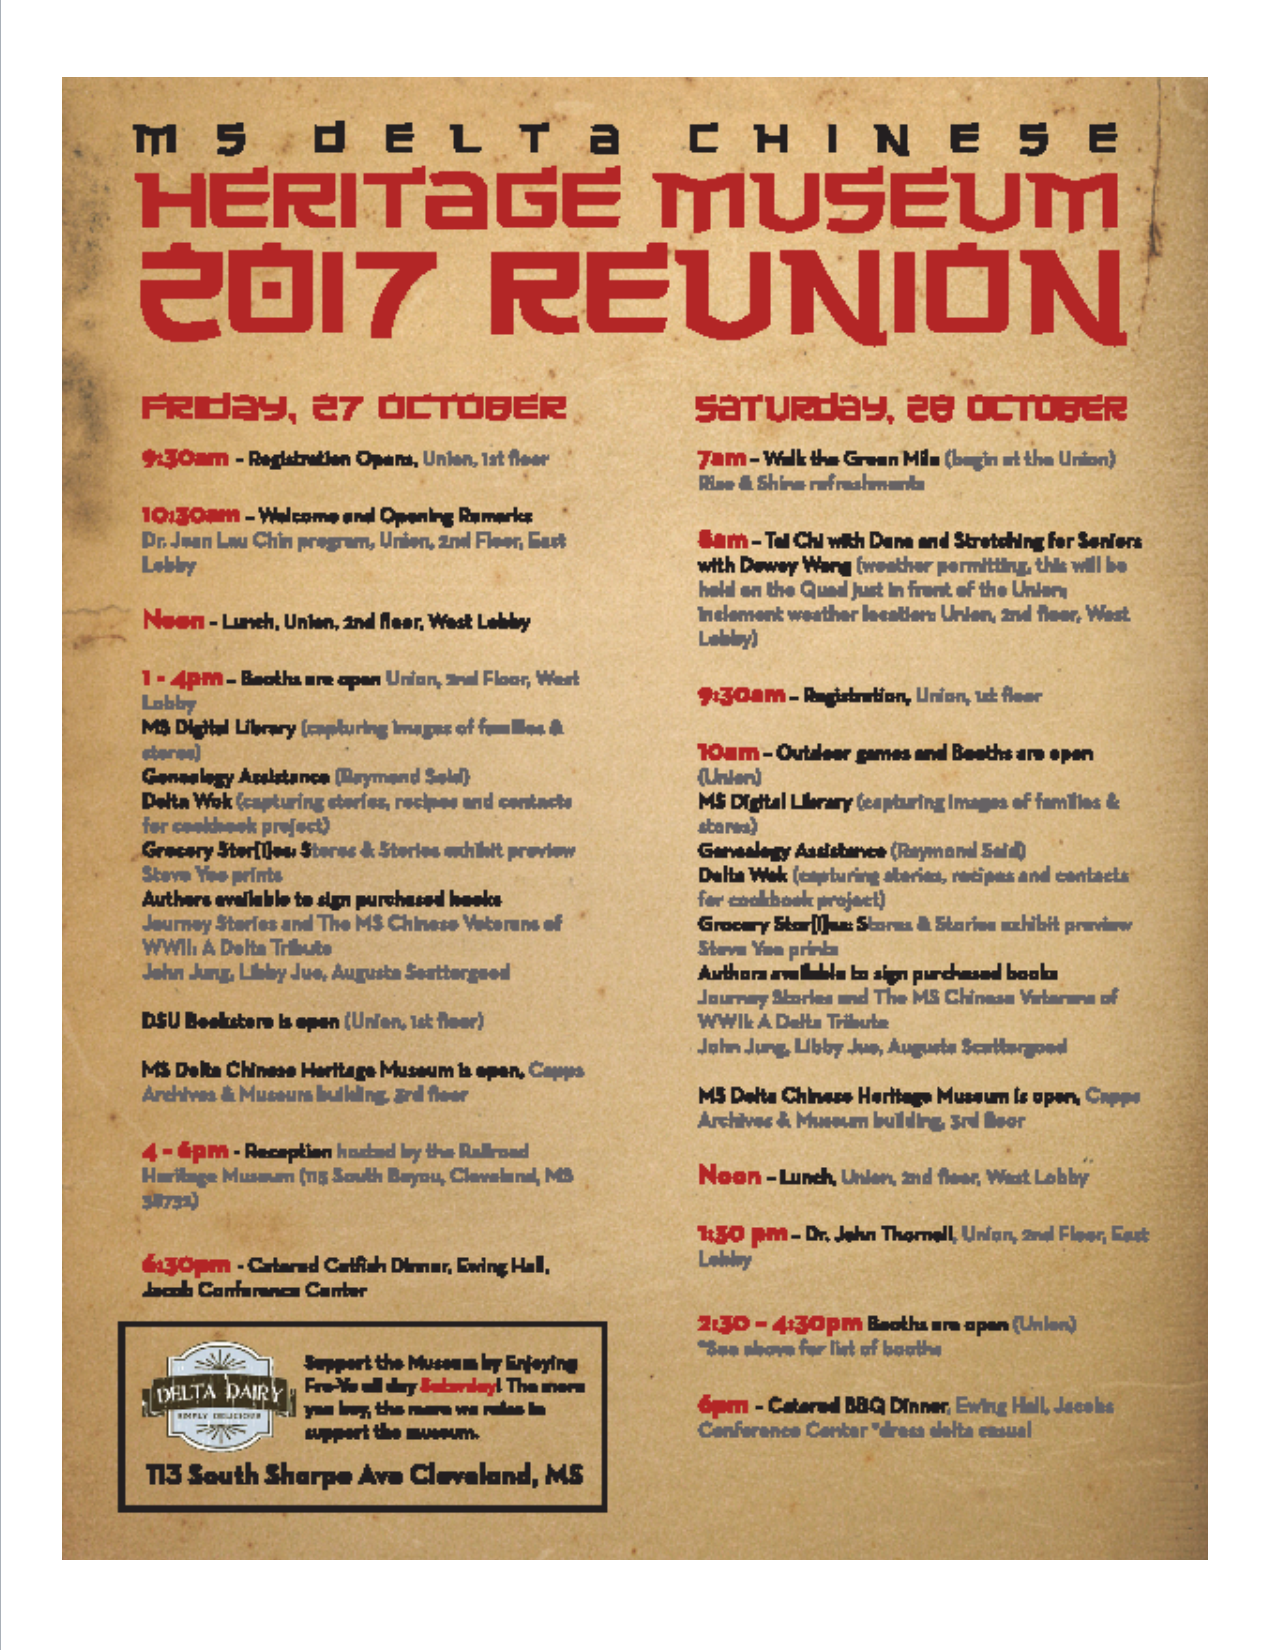 2017 Reunion Schedule MDCHM